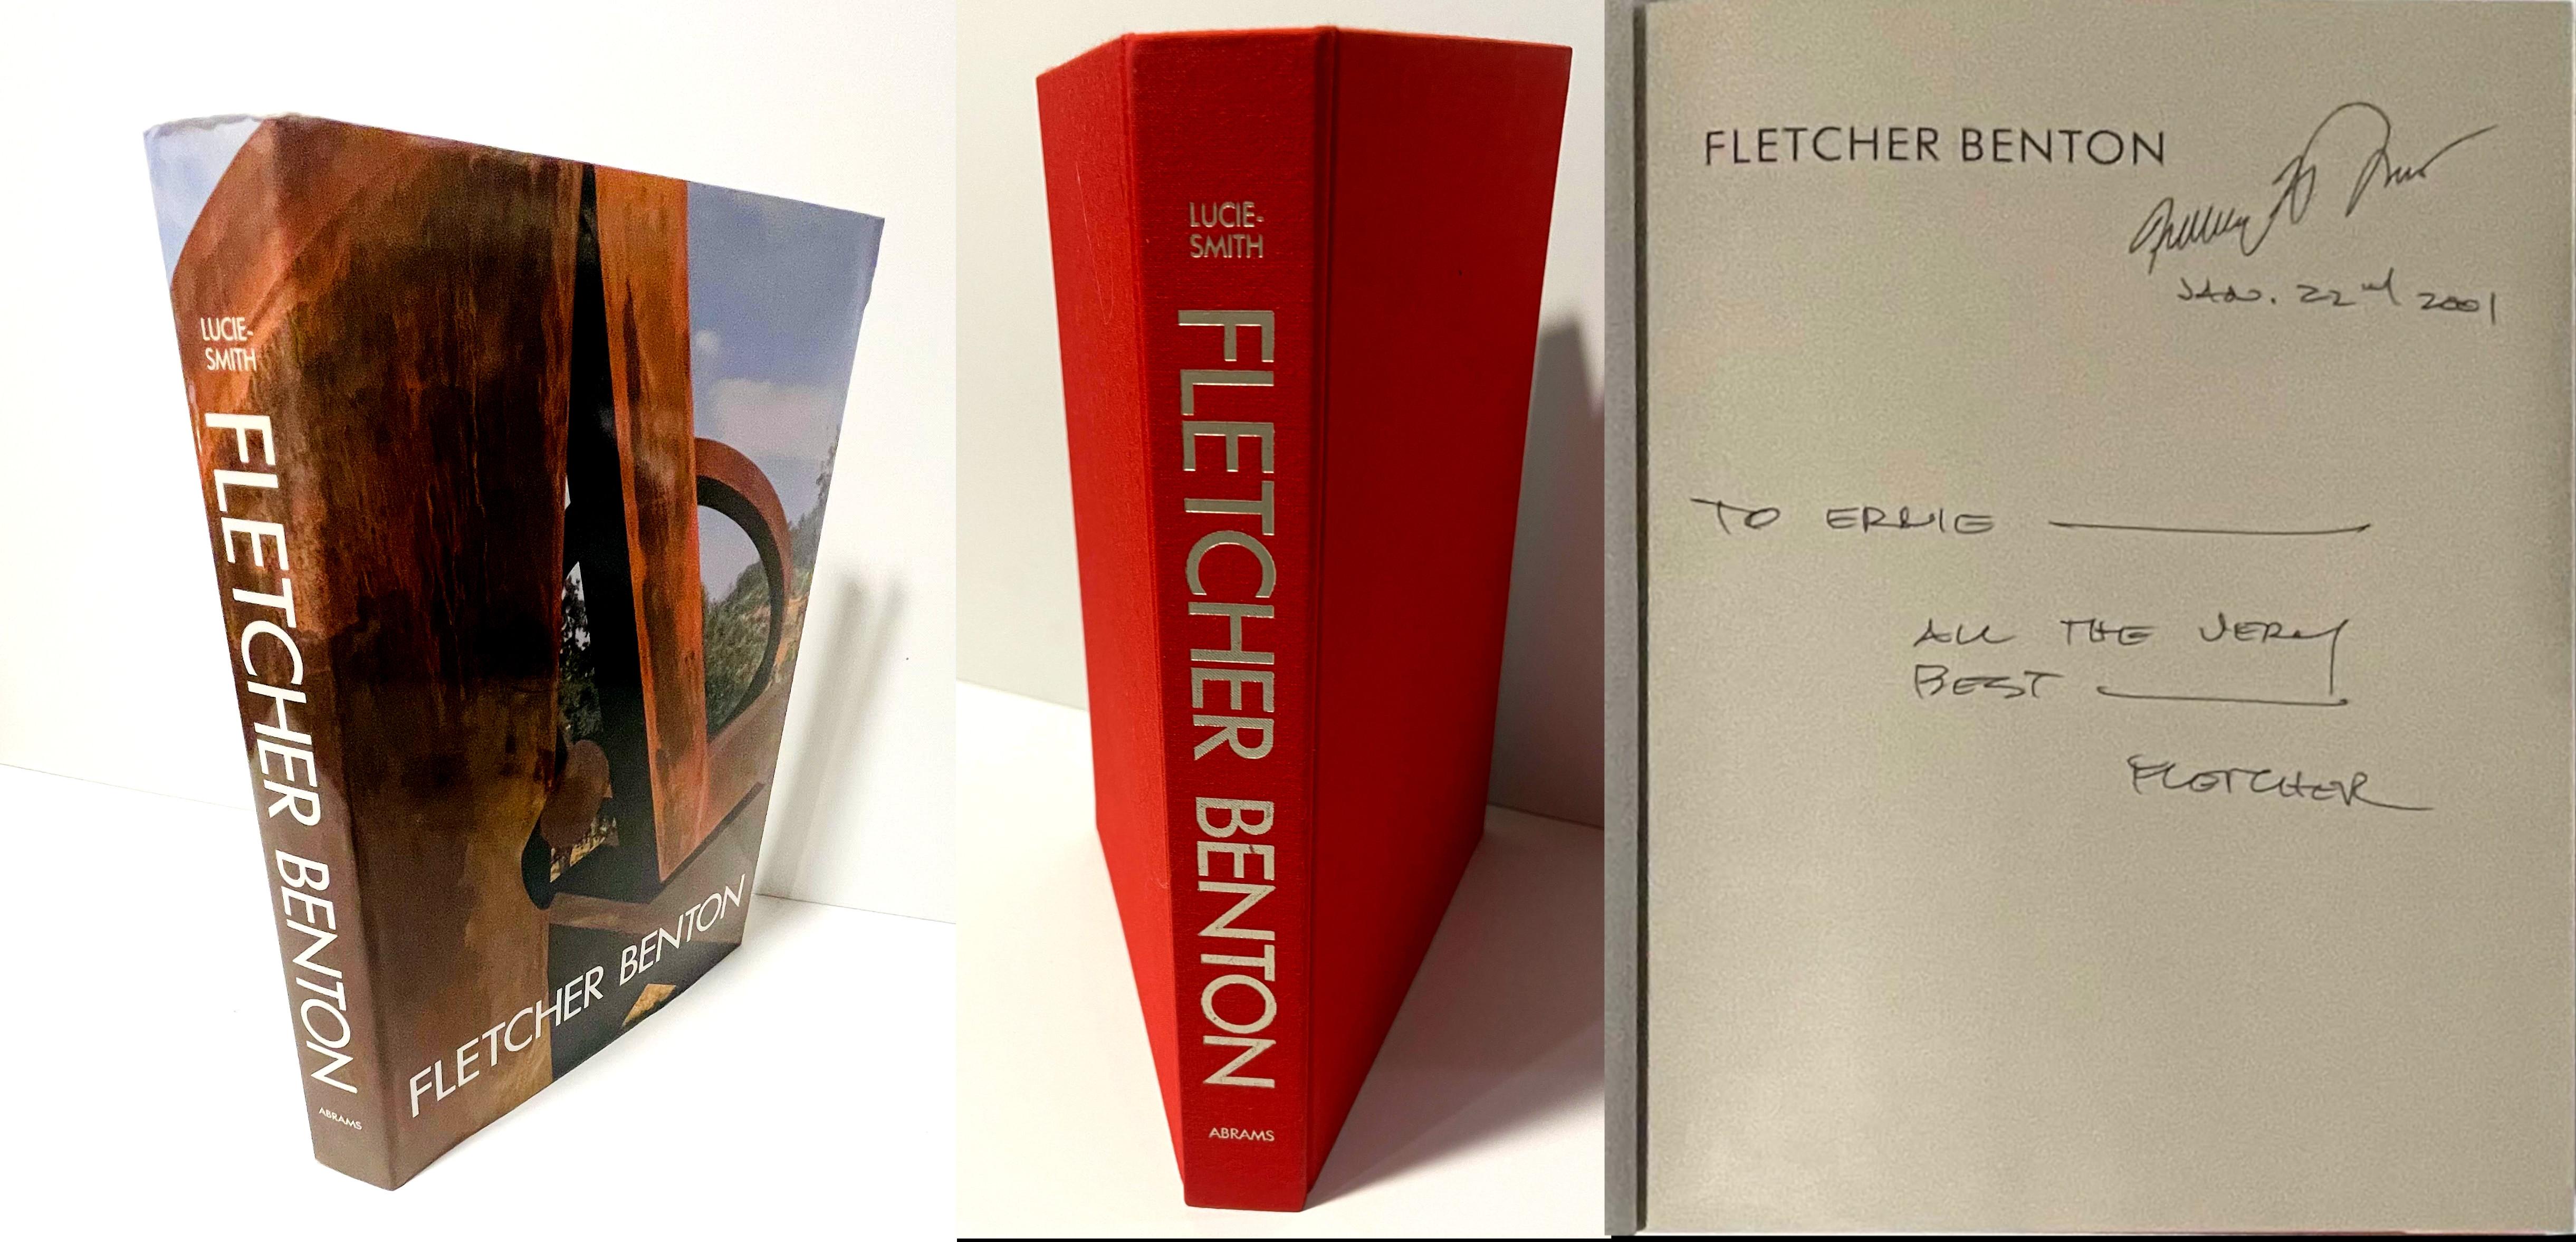 Fletcher Benton
Grande monographie cartonnée (signée deux fois par Fletcher Benton), 1990
Monographie reliée avec des planches en tissu et une jaquette (signée deux fois à la main et dédicacée à Ernie).
signée deux fois à la main, datée et inscrite